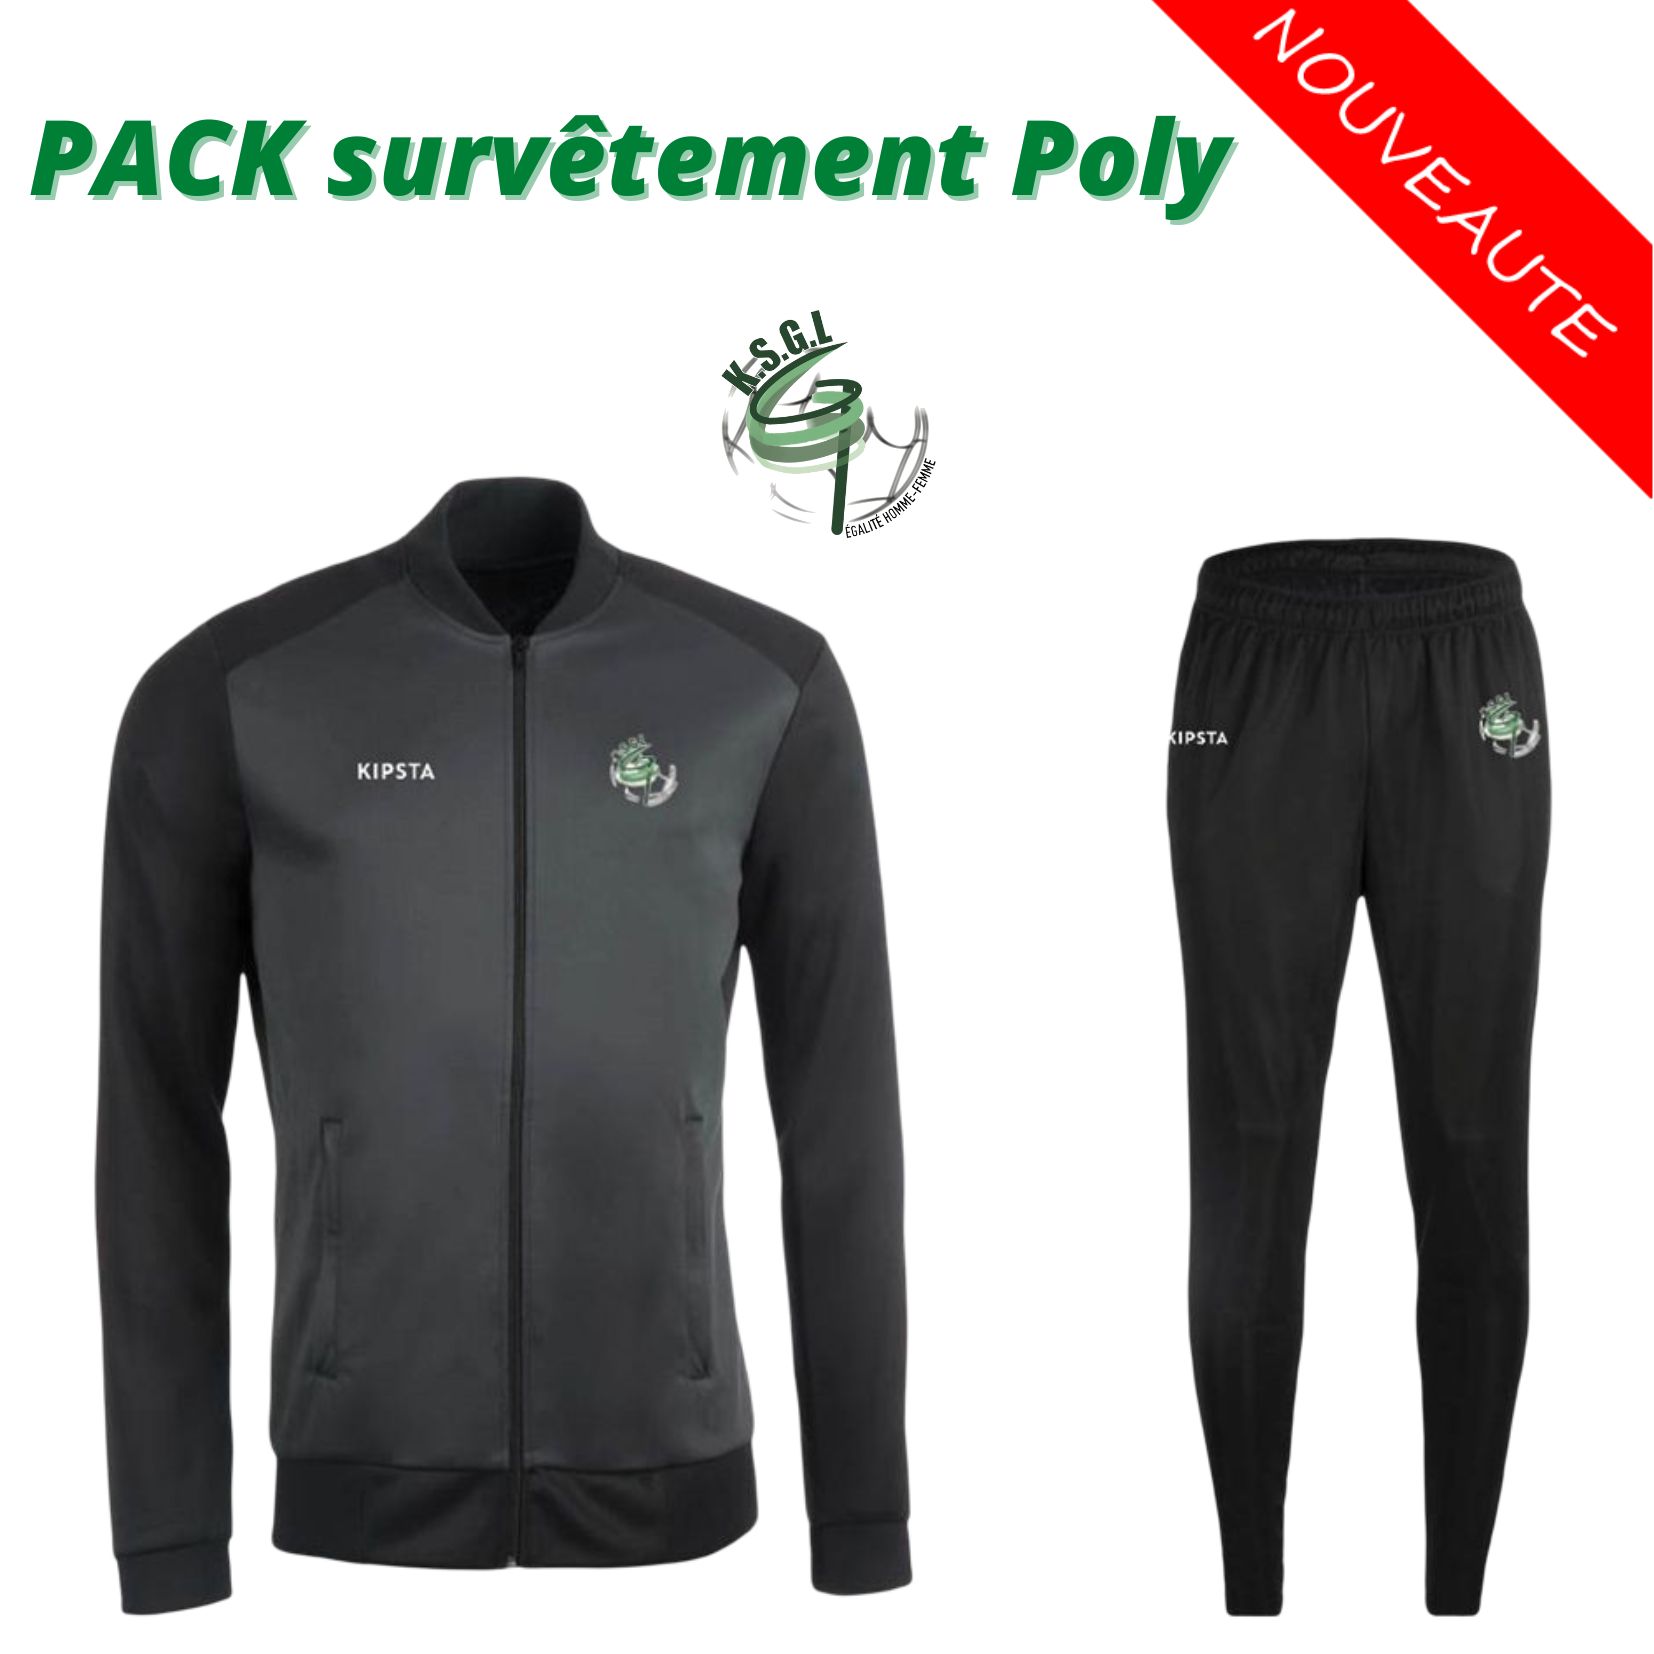 Pack Survêtement Poly / 63 €